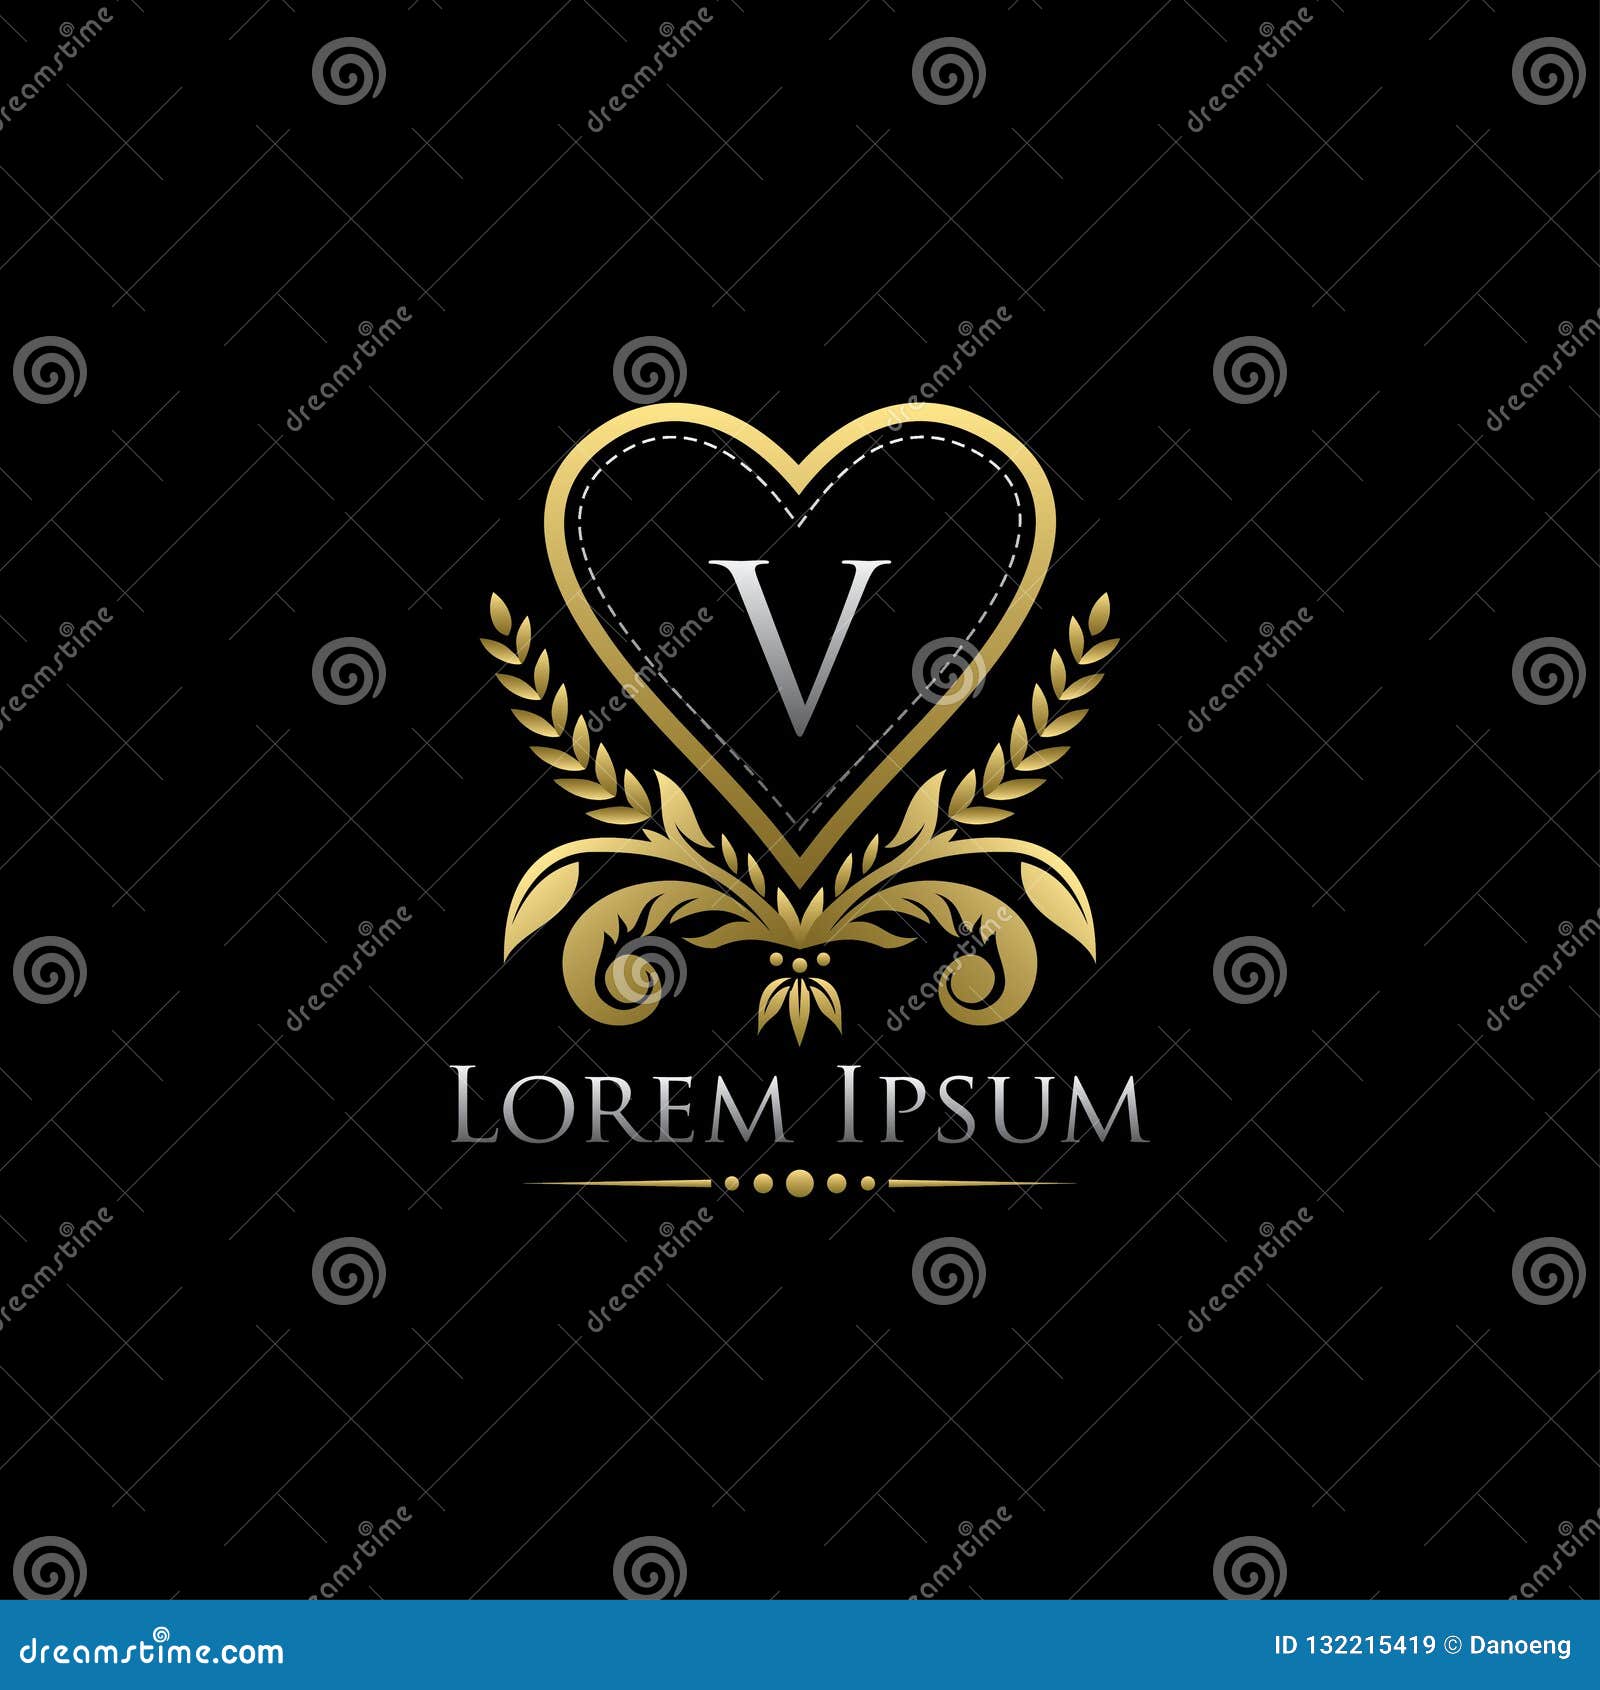 Premium Vector  Romantic v letter heart classy logo